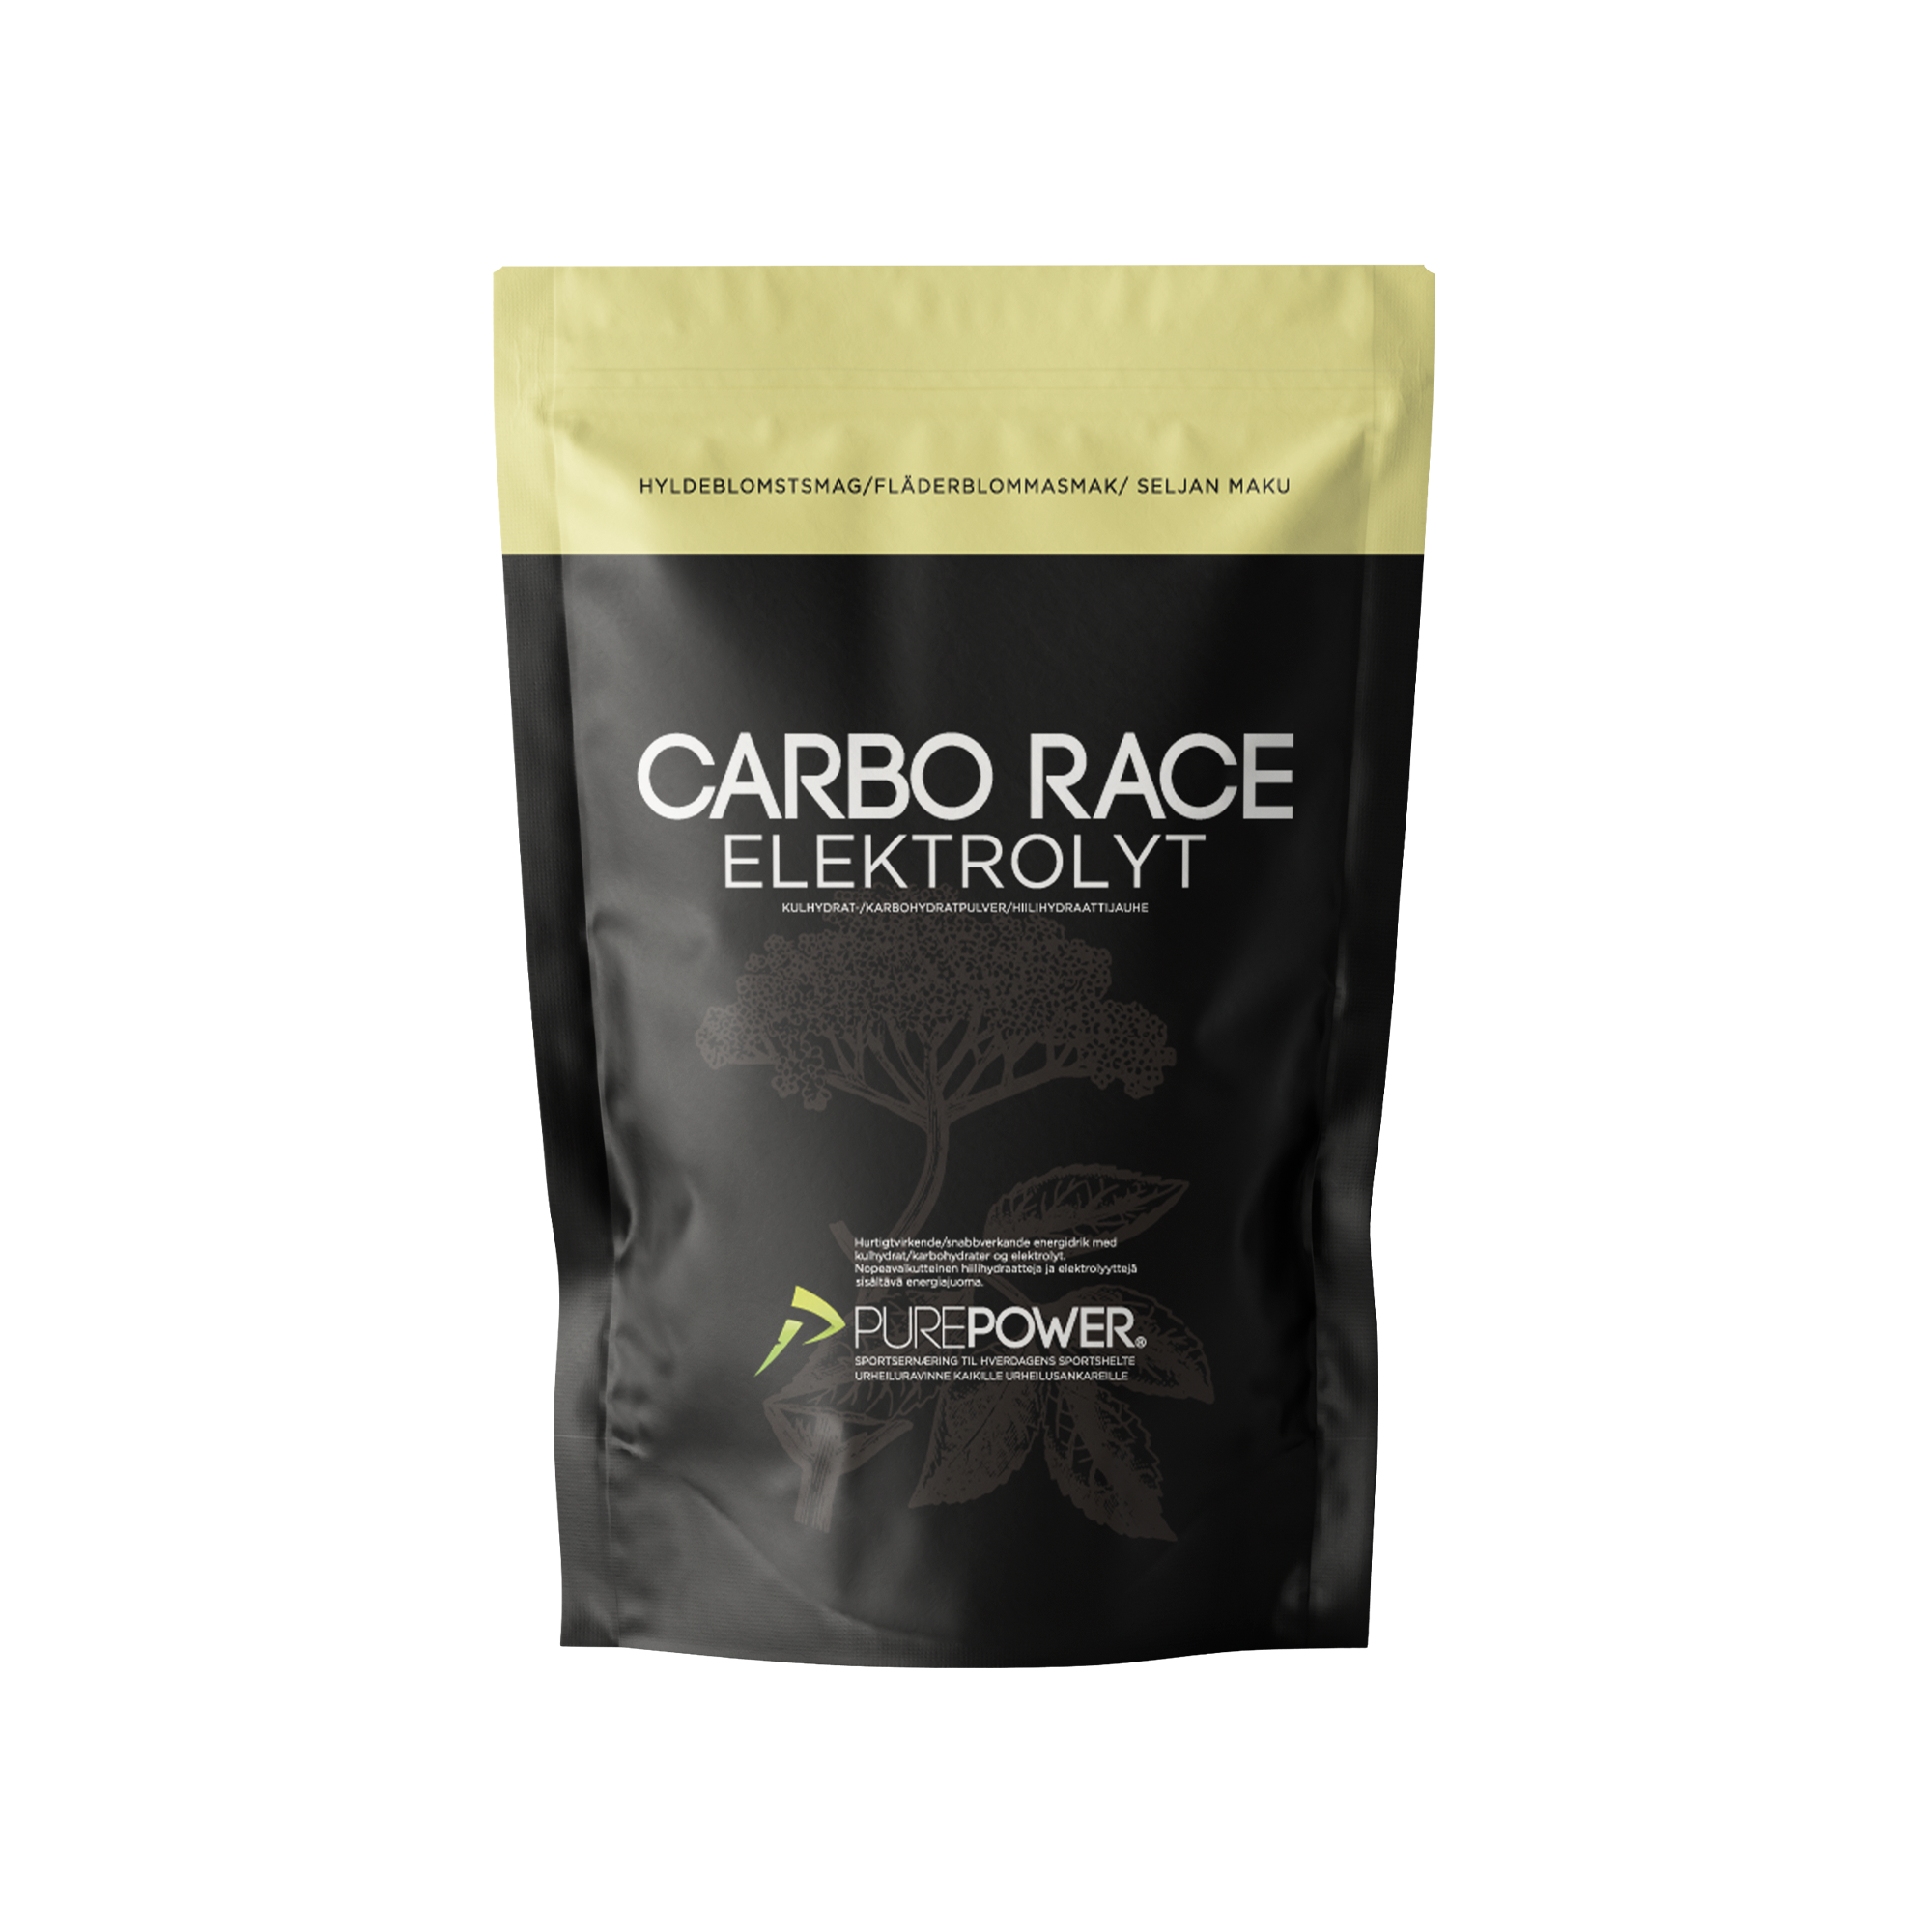 Billede af Carbo Race Elektrolyt Hyldeblomst 1 kg